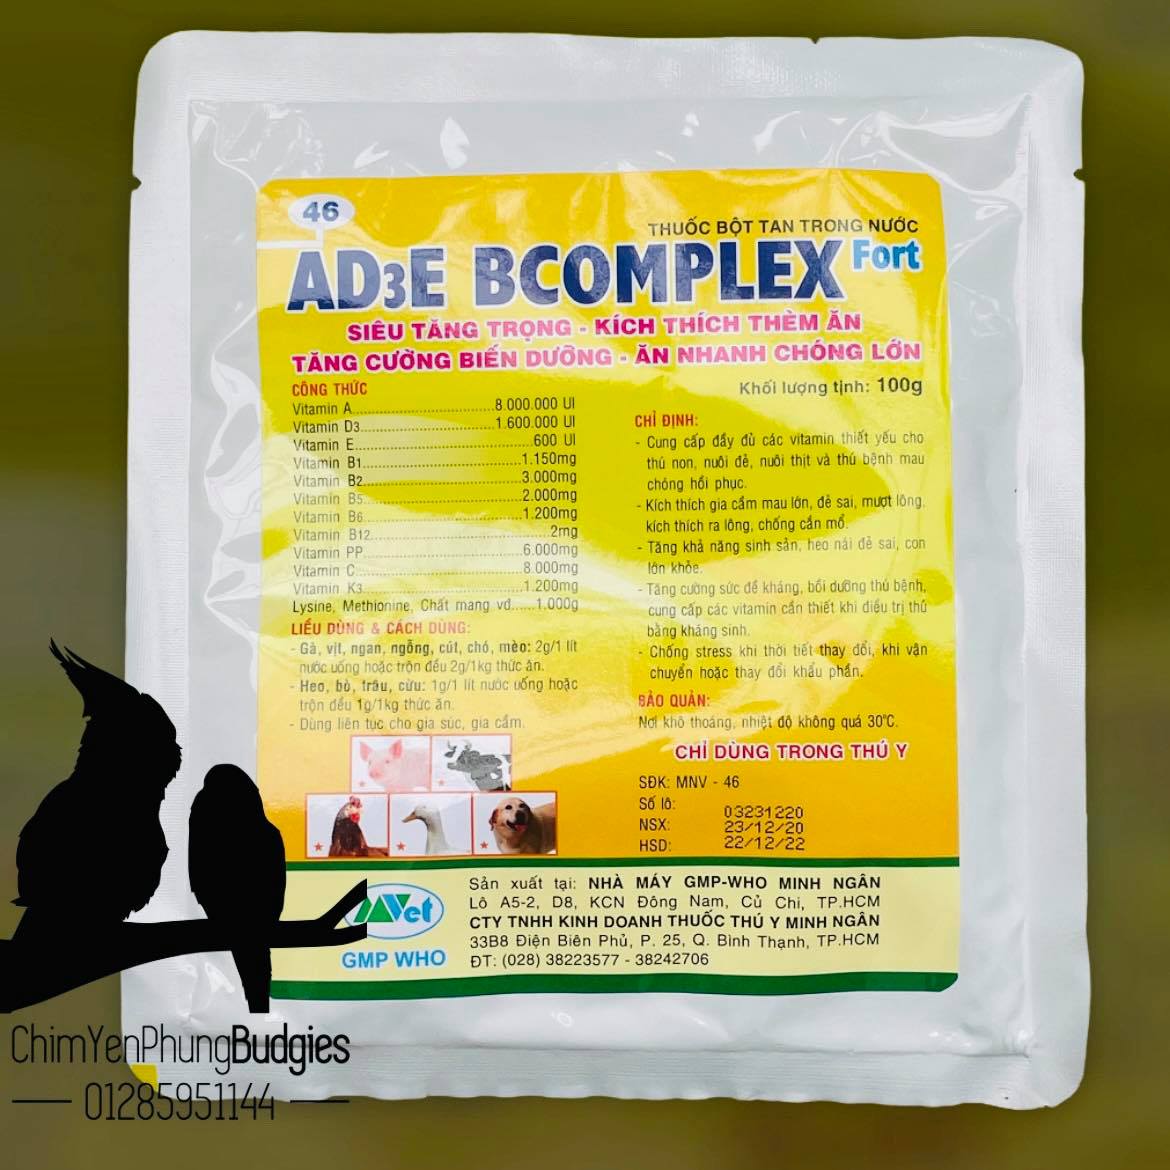 2 gói Vitamin AD3E Bcomplex cho vật nuôi tăng trọng kích thích thèm ăn.